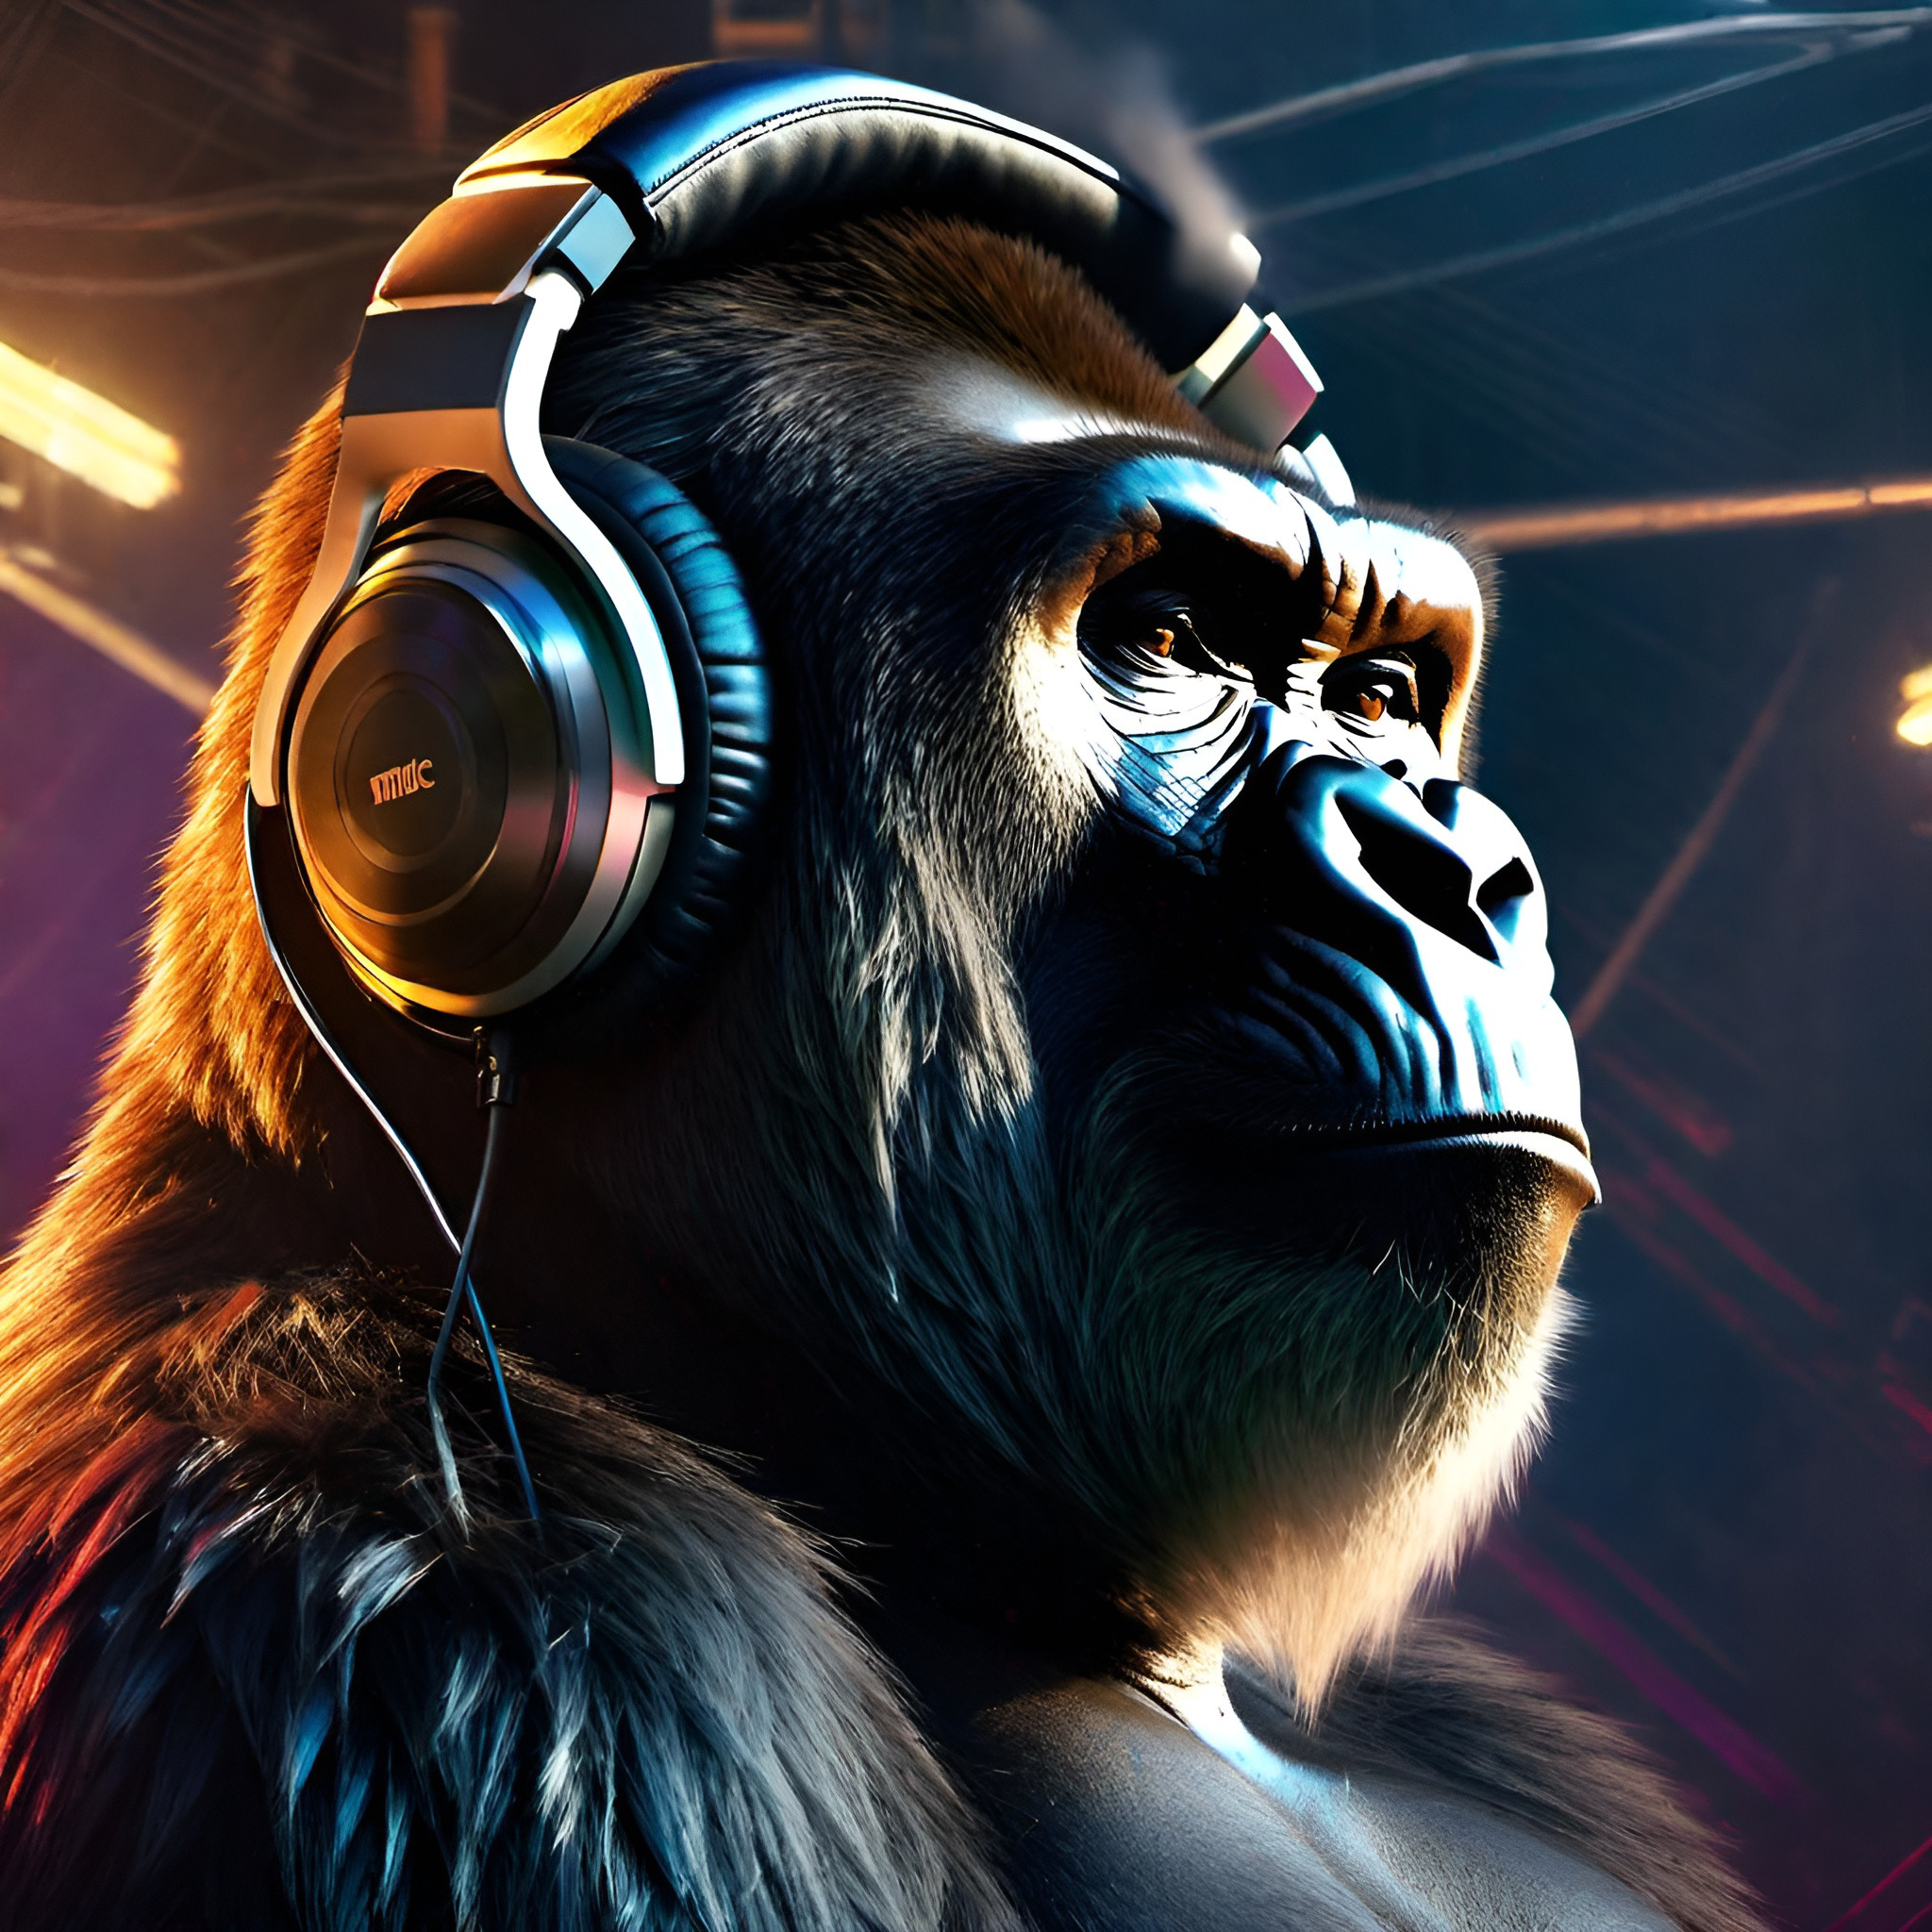 gorilla with headphones